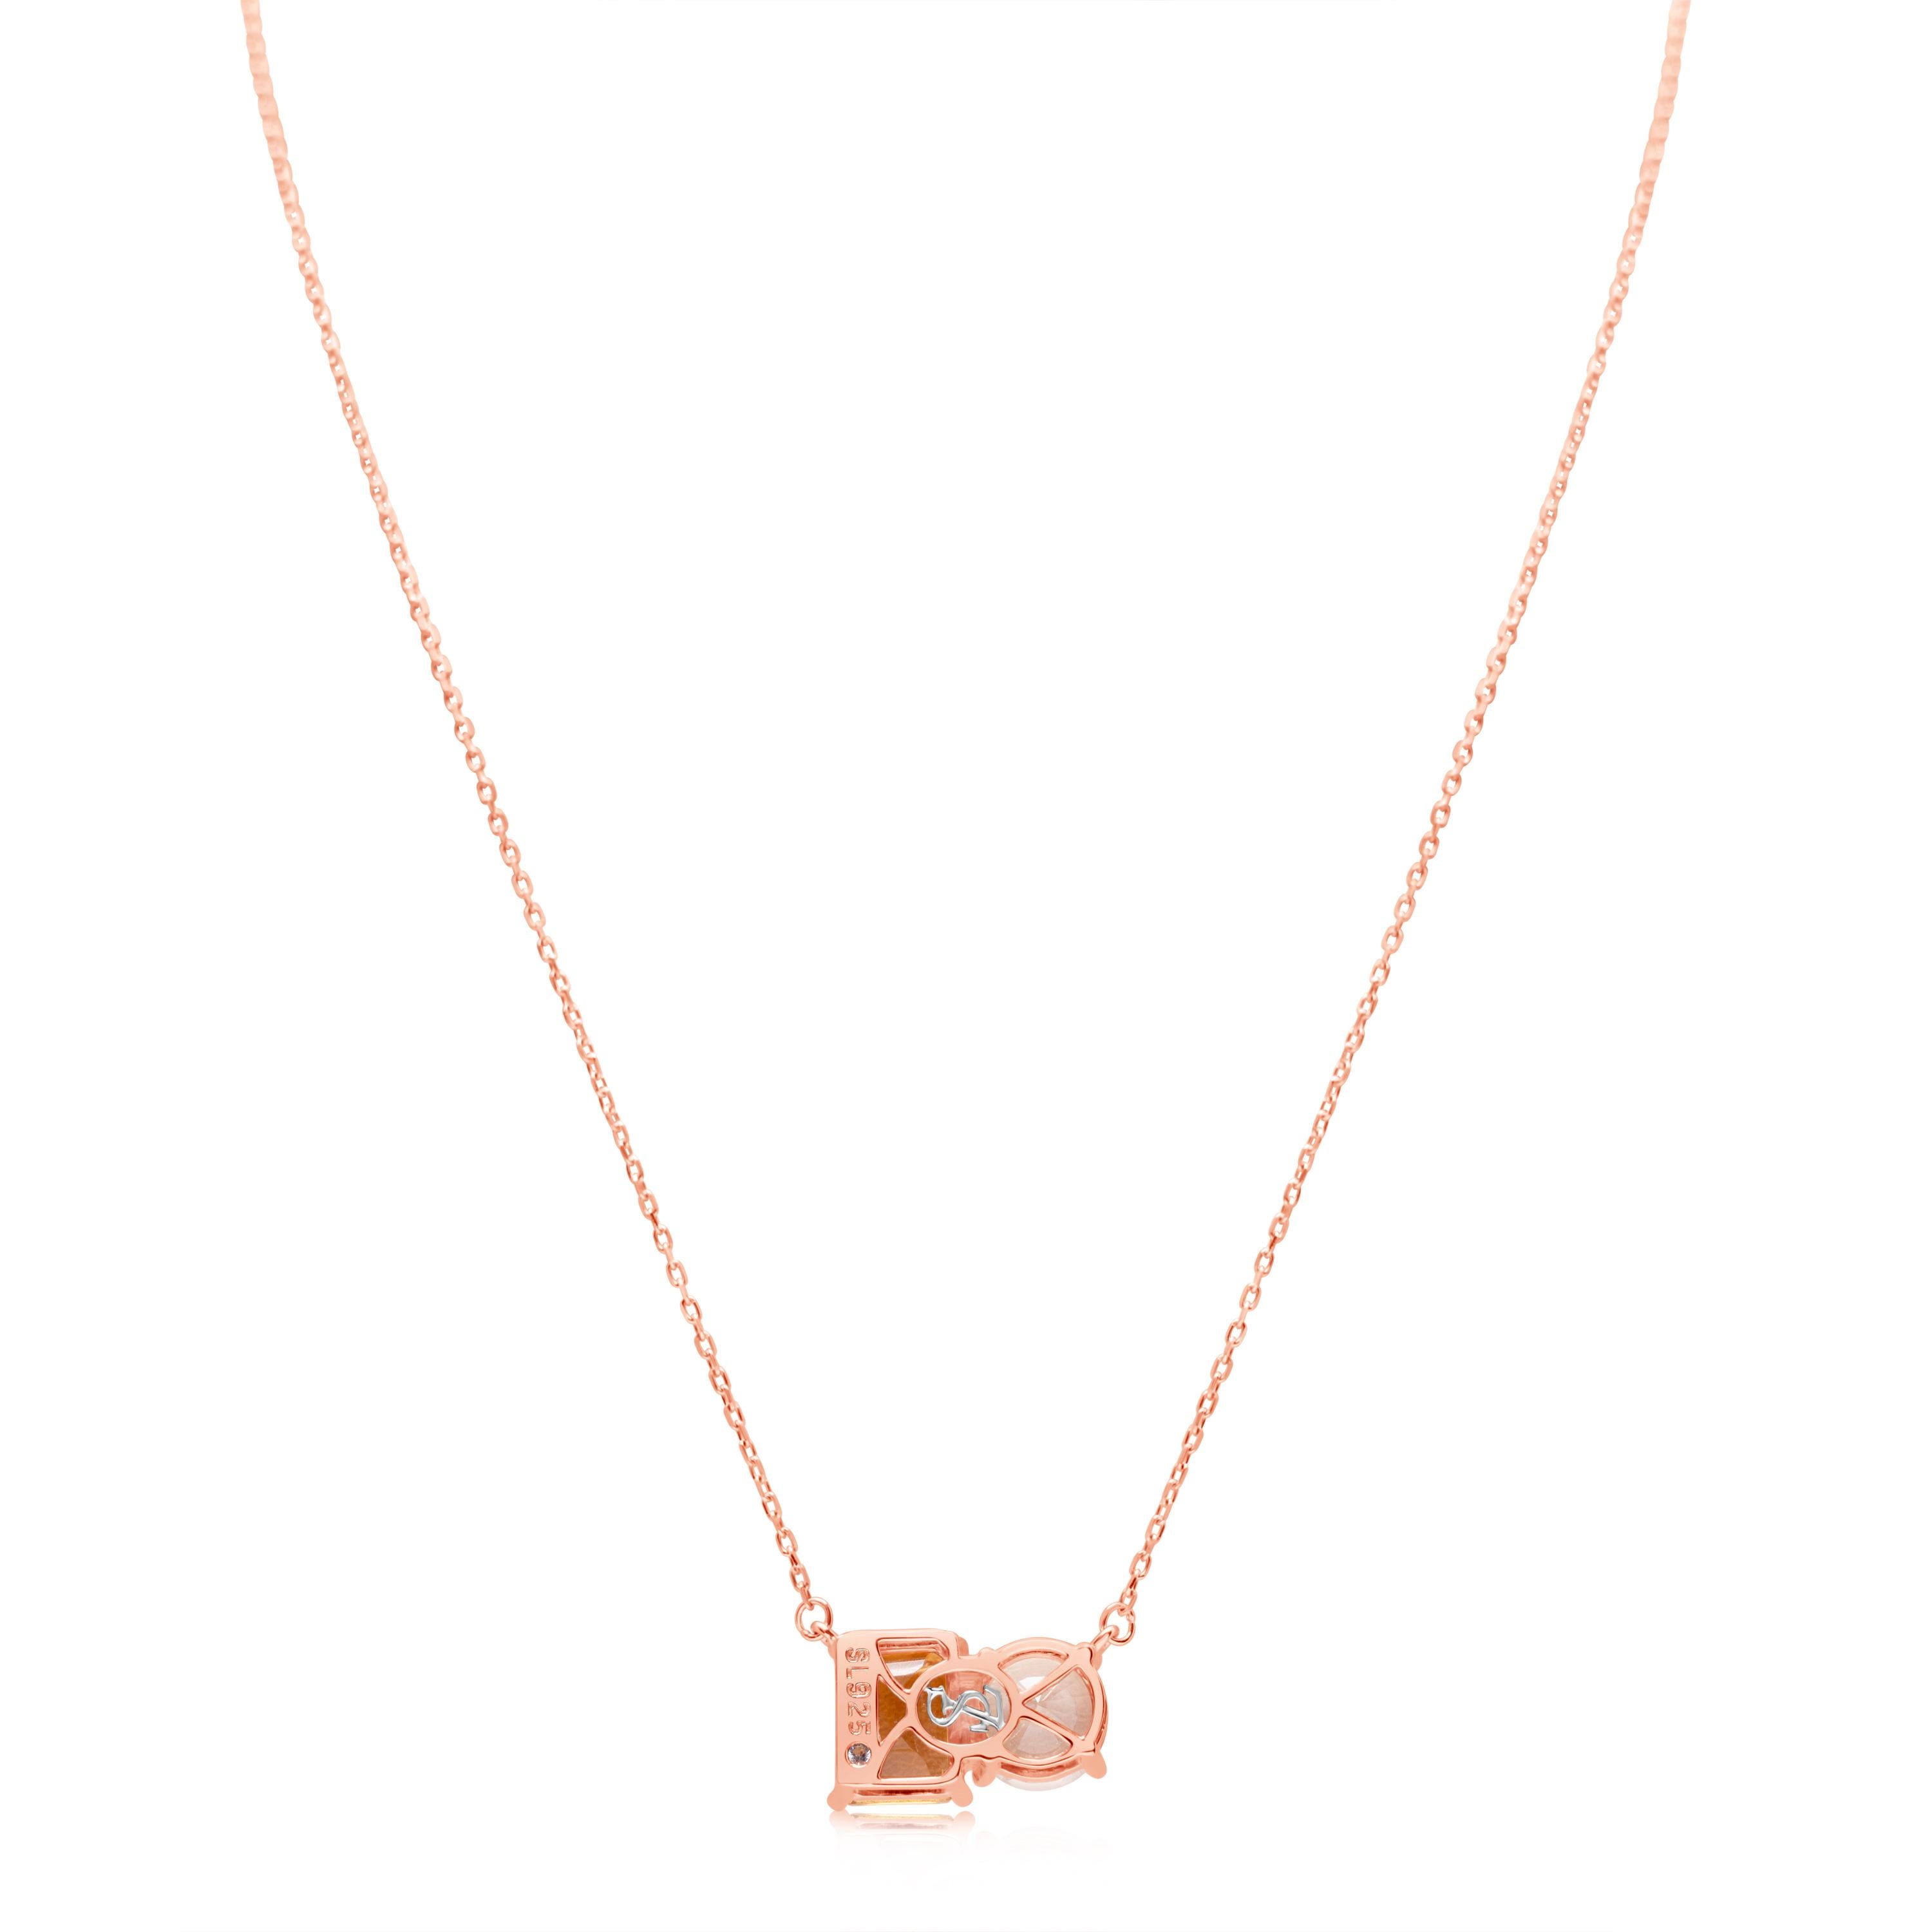 Whiting dans des tons de blanc et d'orange, ce collier Suzy Levian est tout à fait dans la tendance et présente une topaze blanche de taille ronde et une citrine orange de taille émeraude parfaitement assorties. Ce collier symbolise l'association